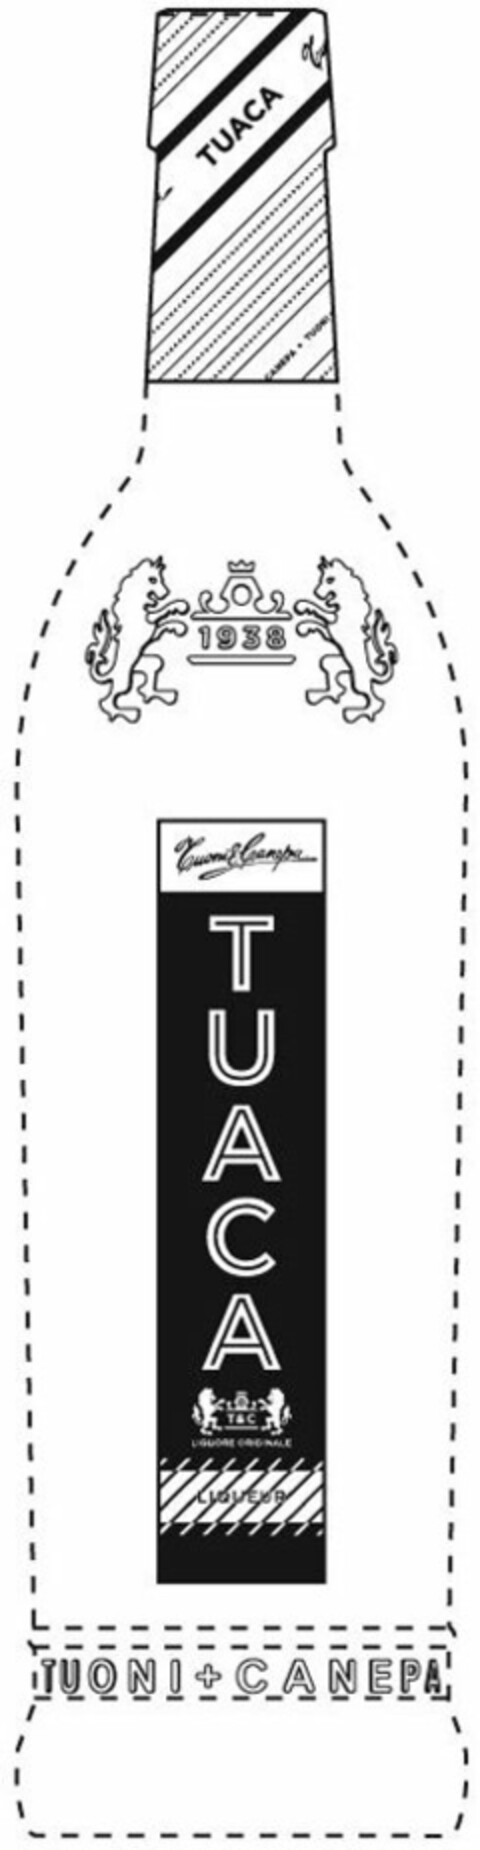 TUACA, TUONI & CANEPA, 1938, LIQUORE ORIGINALE, LIQUEUR Logo (USPTO, 06.04.2010)